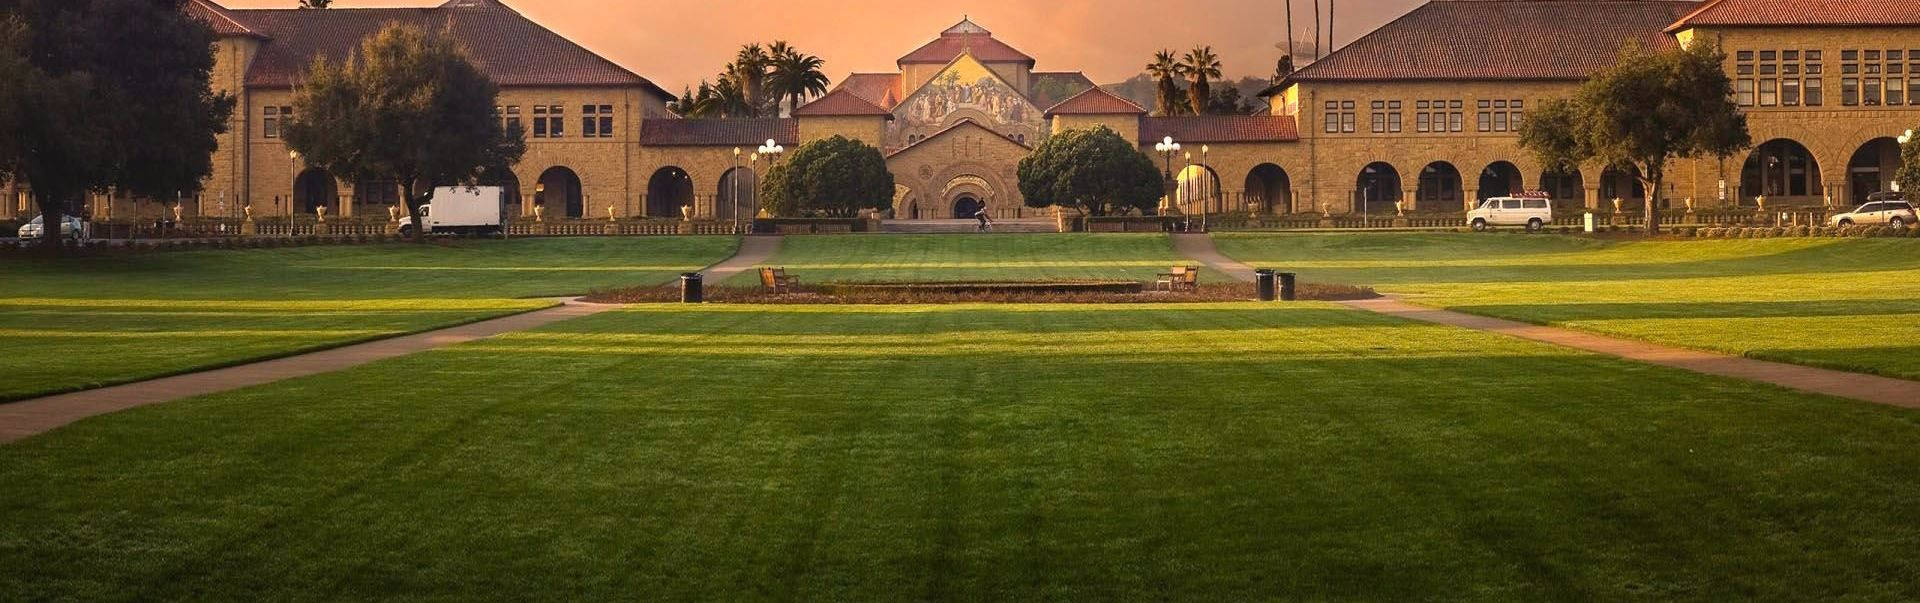 Panoramautsiktav Stanford-universitetet. Wallpaper